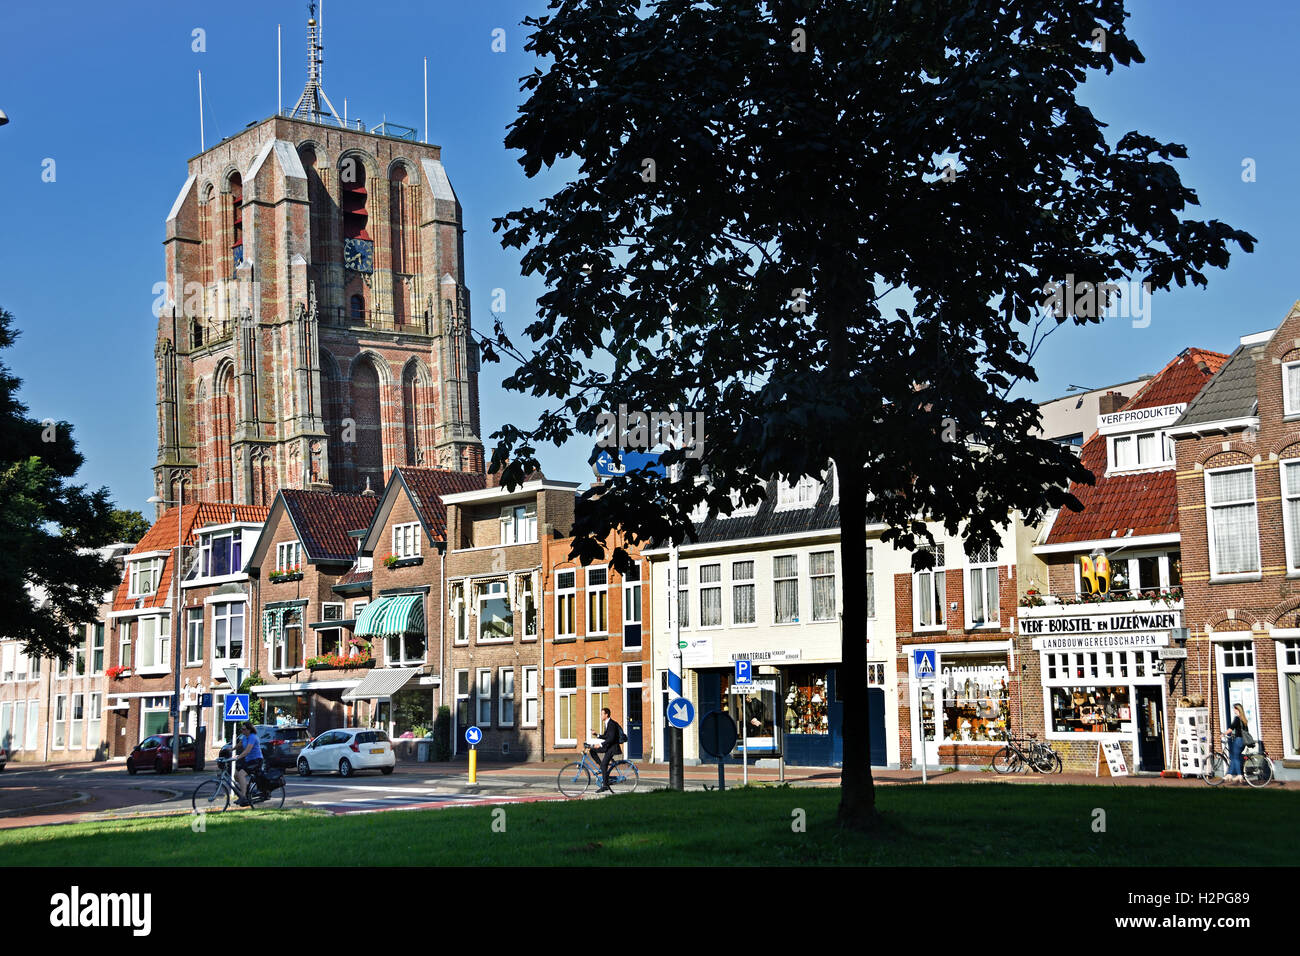 Vieille ville néerlandaise de Leeuwarden Frise Fryslan Oldehove Tour Toren aux Pays-Bas ( vu de Westerplantage street ) Banque D'Images